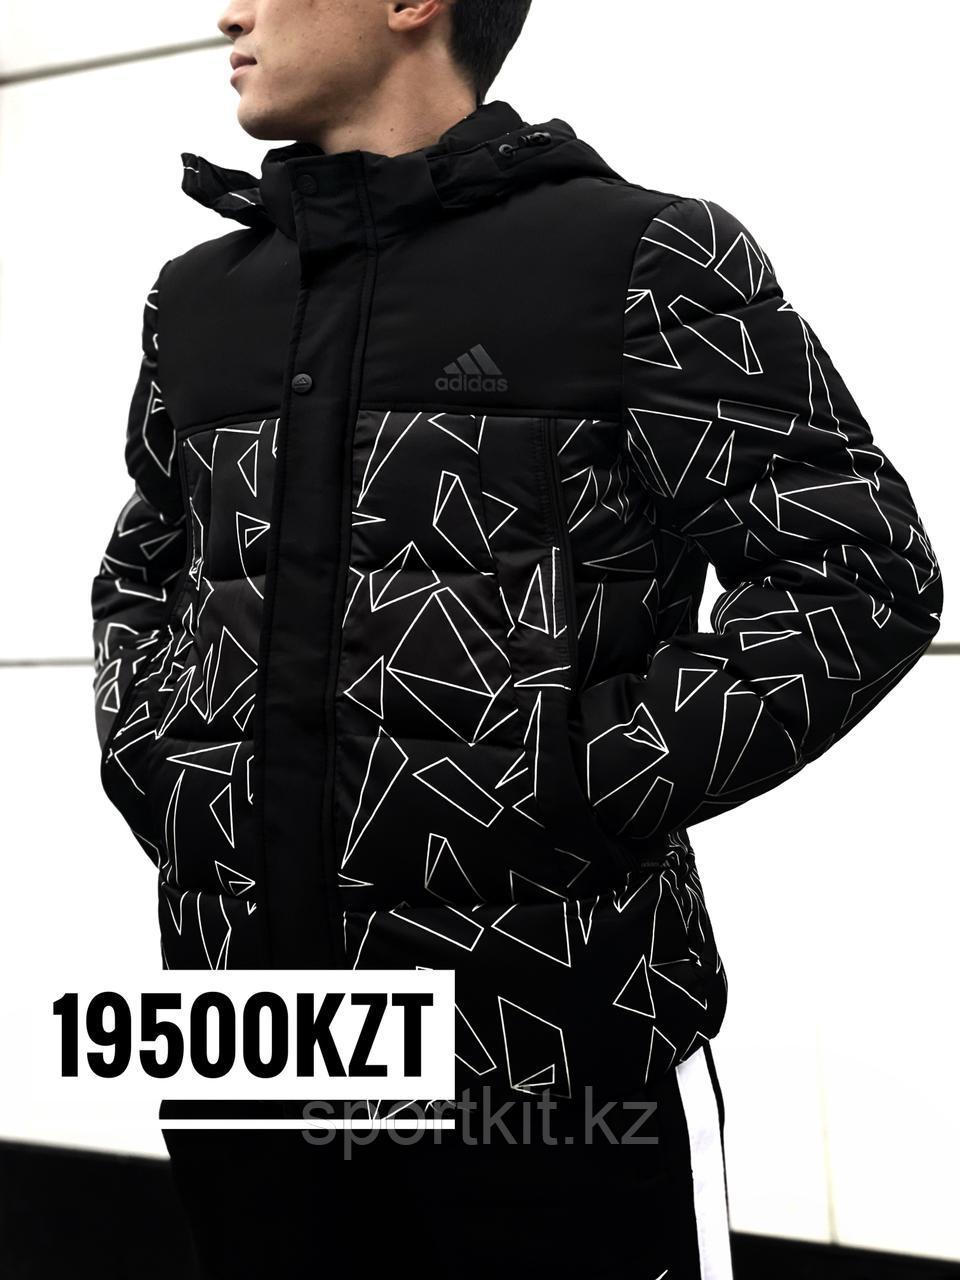 Мужская куртка Adidas 5361, черная